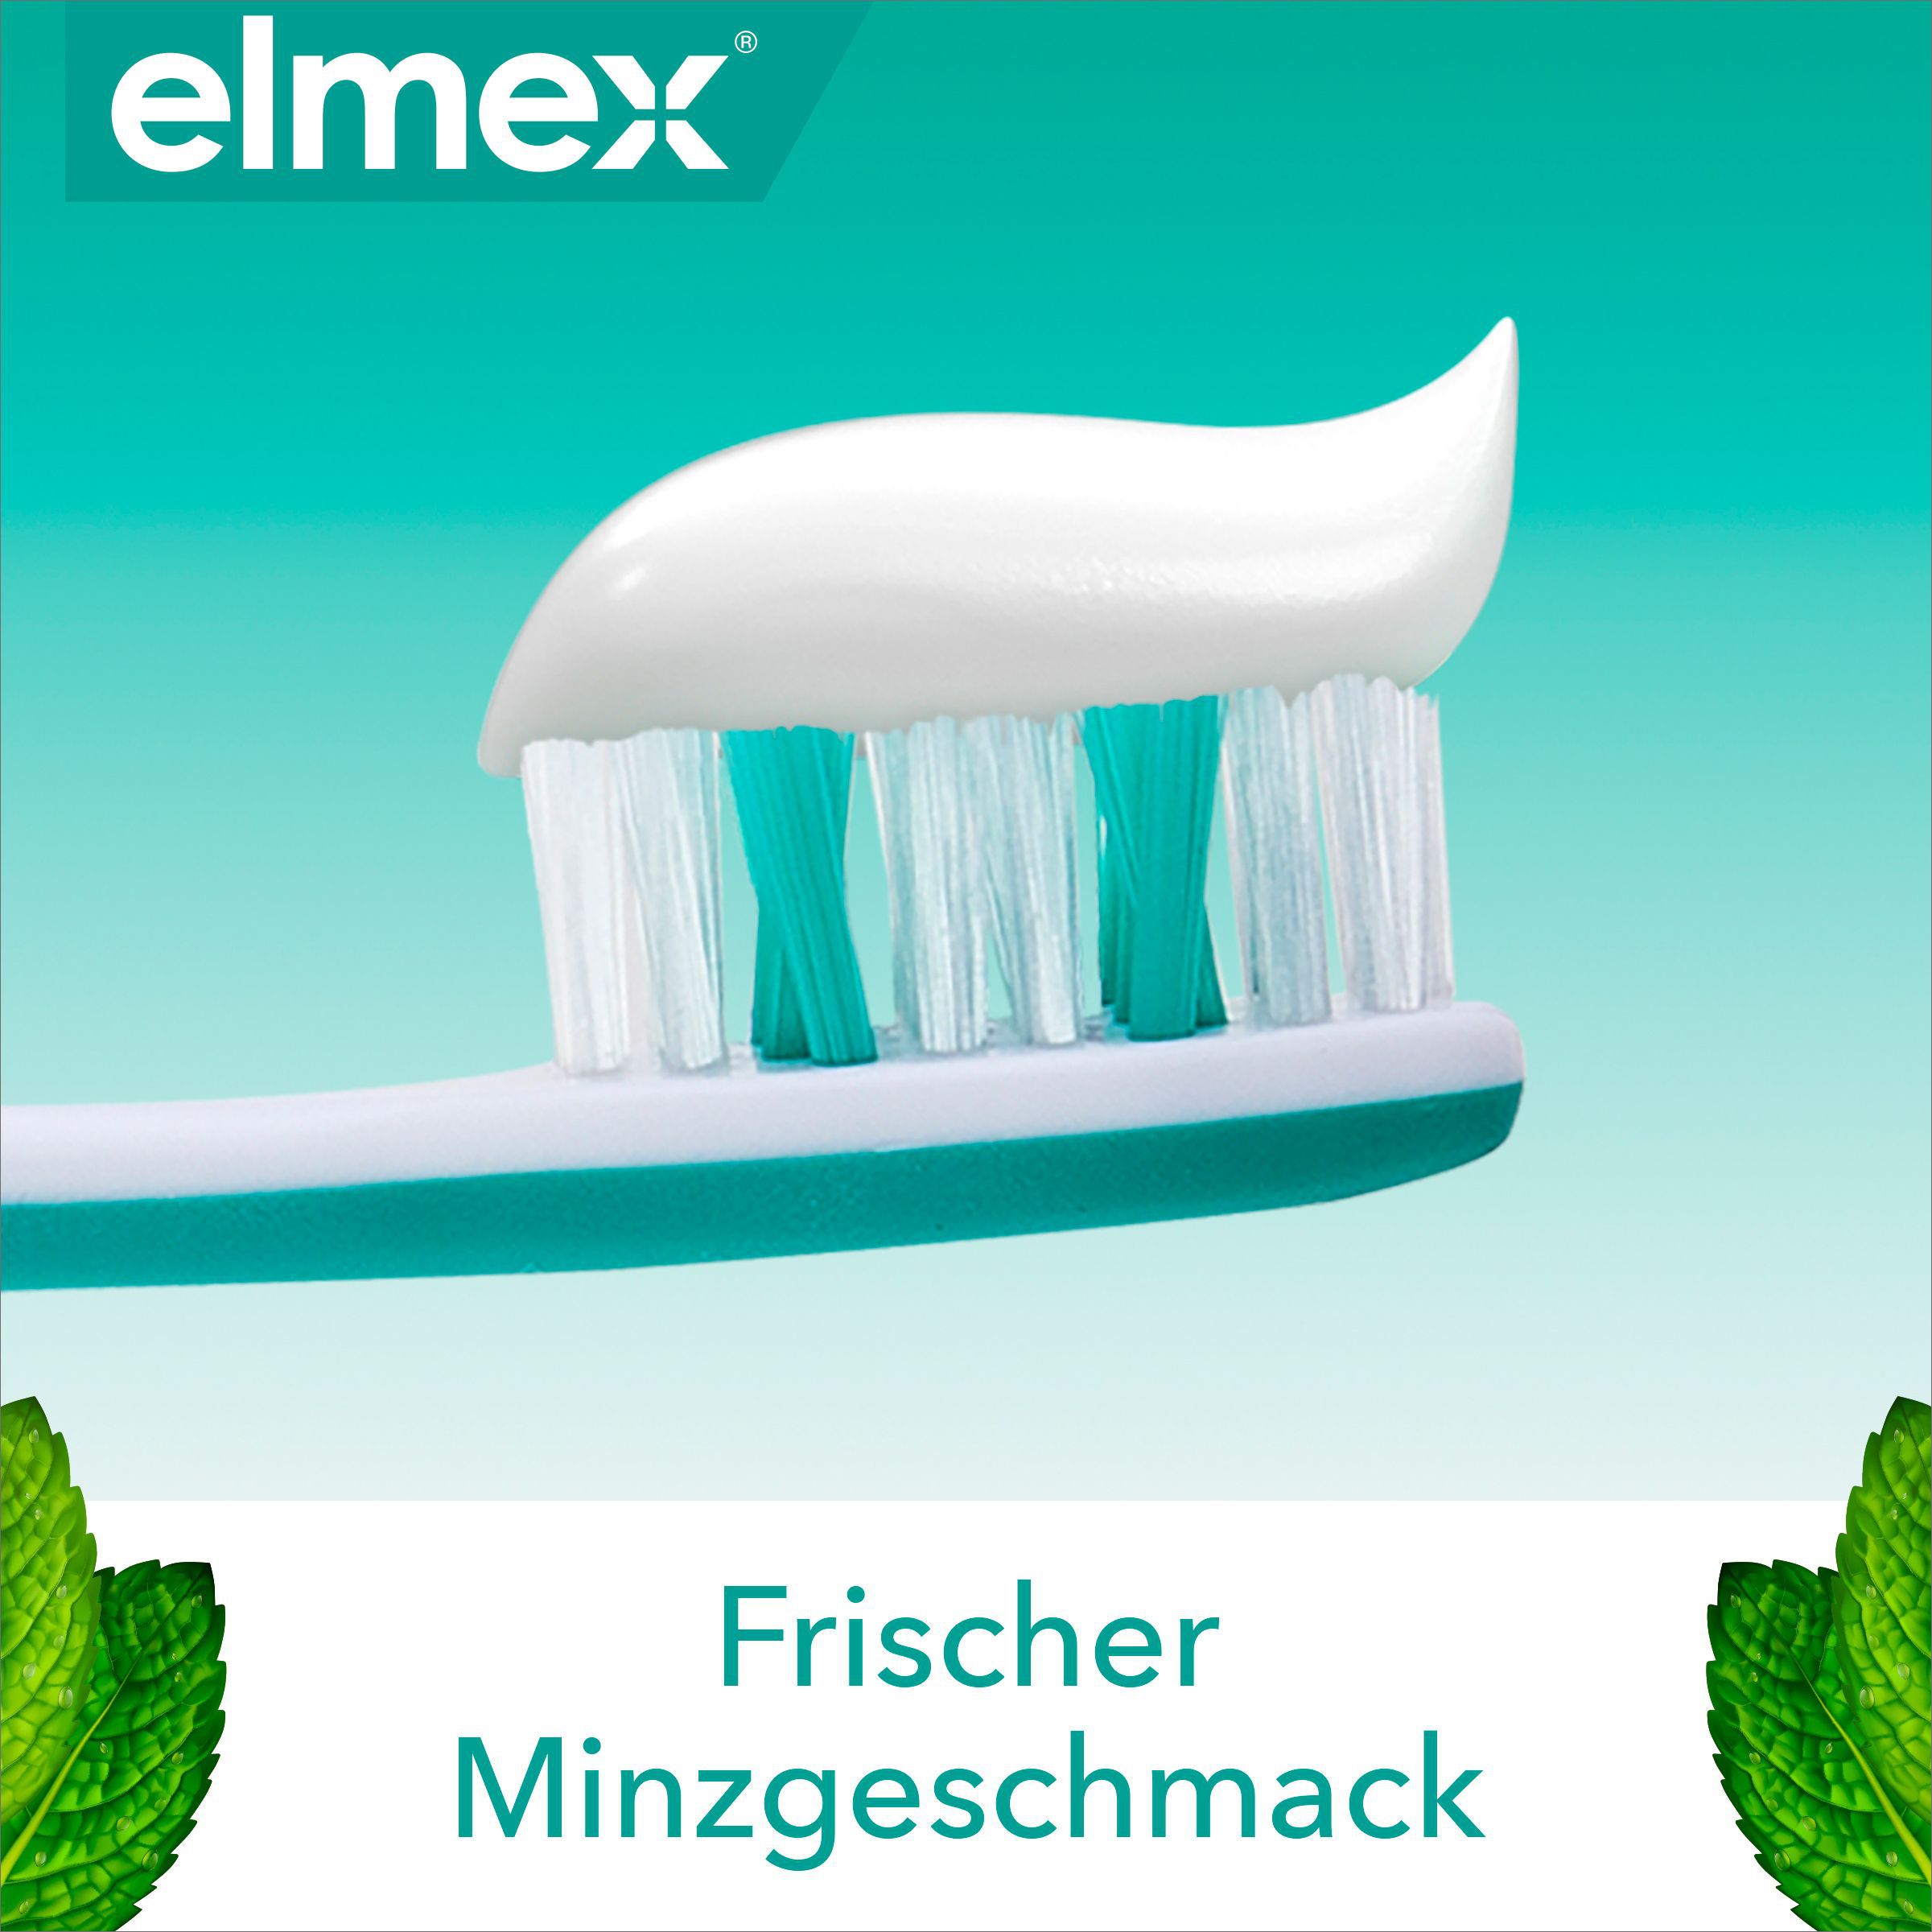 elmex Sensitive Repair & Prevent Zahnpasta für schmerzempfindliche Zähne